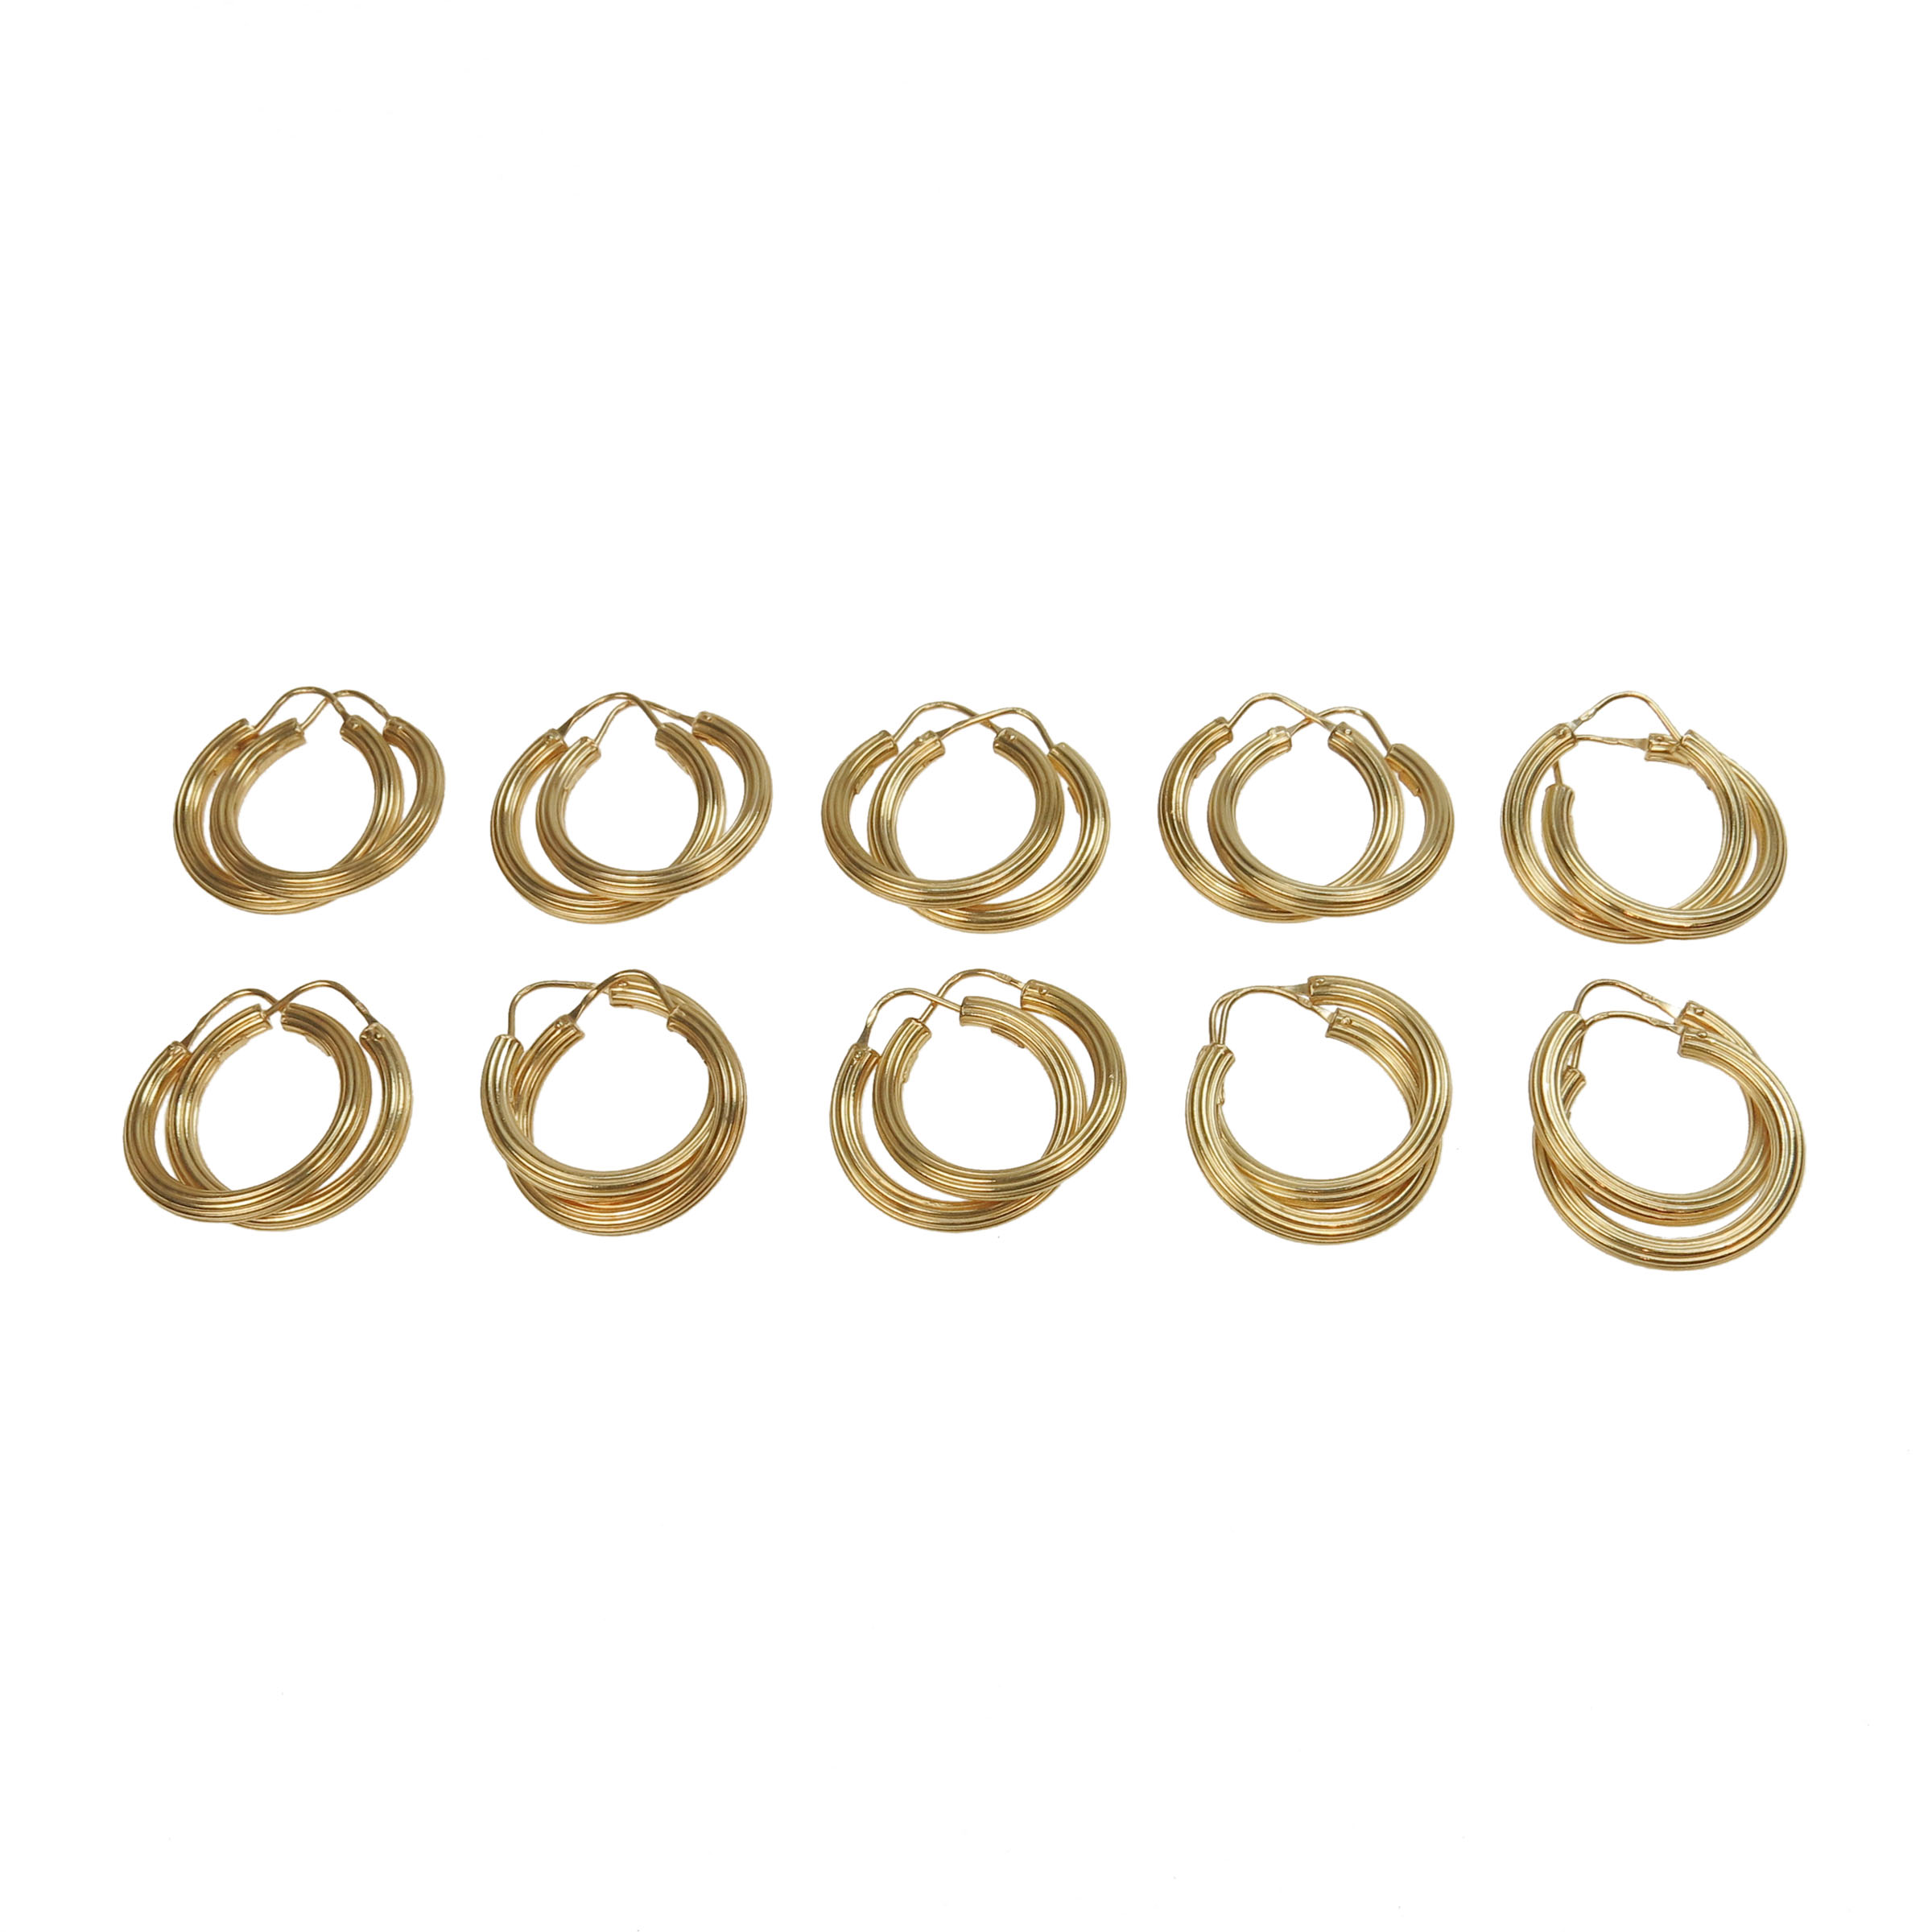 10 X Pairs Of 18K Yellow Gold Hoop Earrings